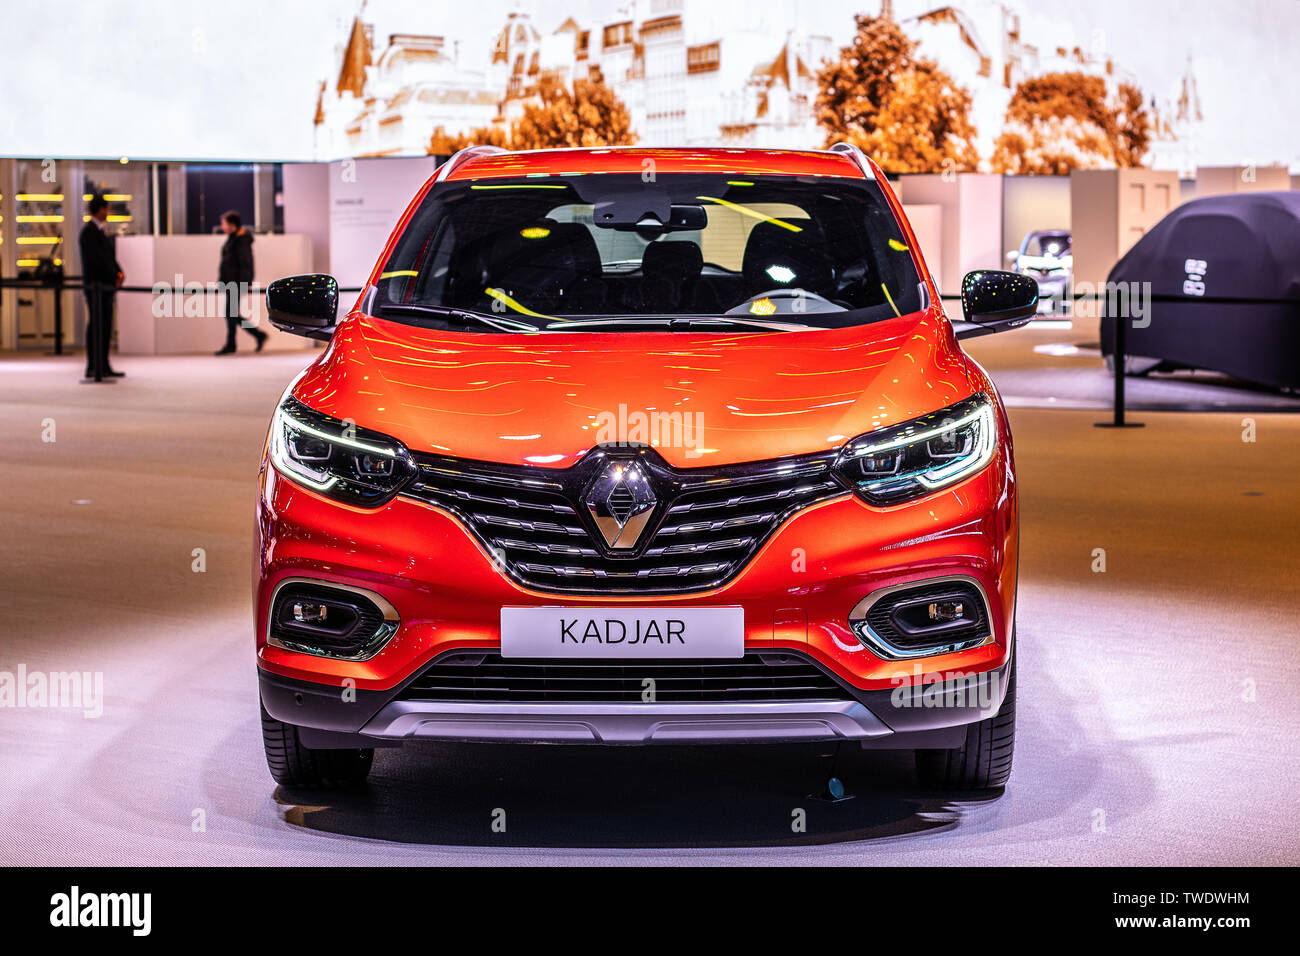 Renault Kadjar: Hacia la cima de su clase